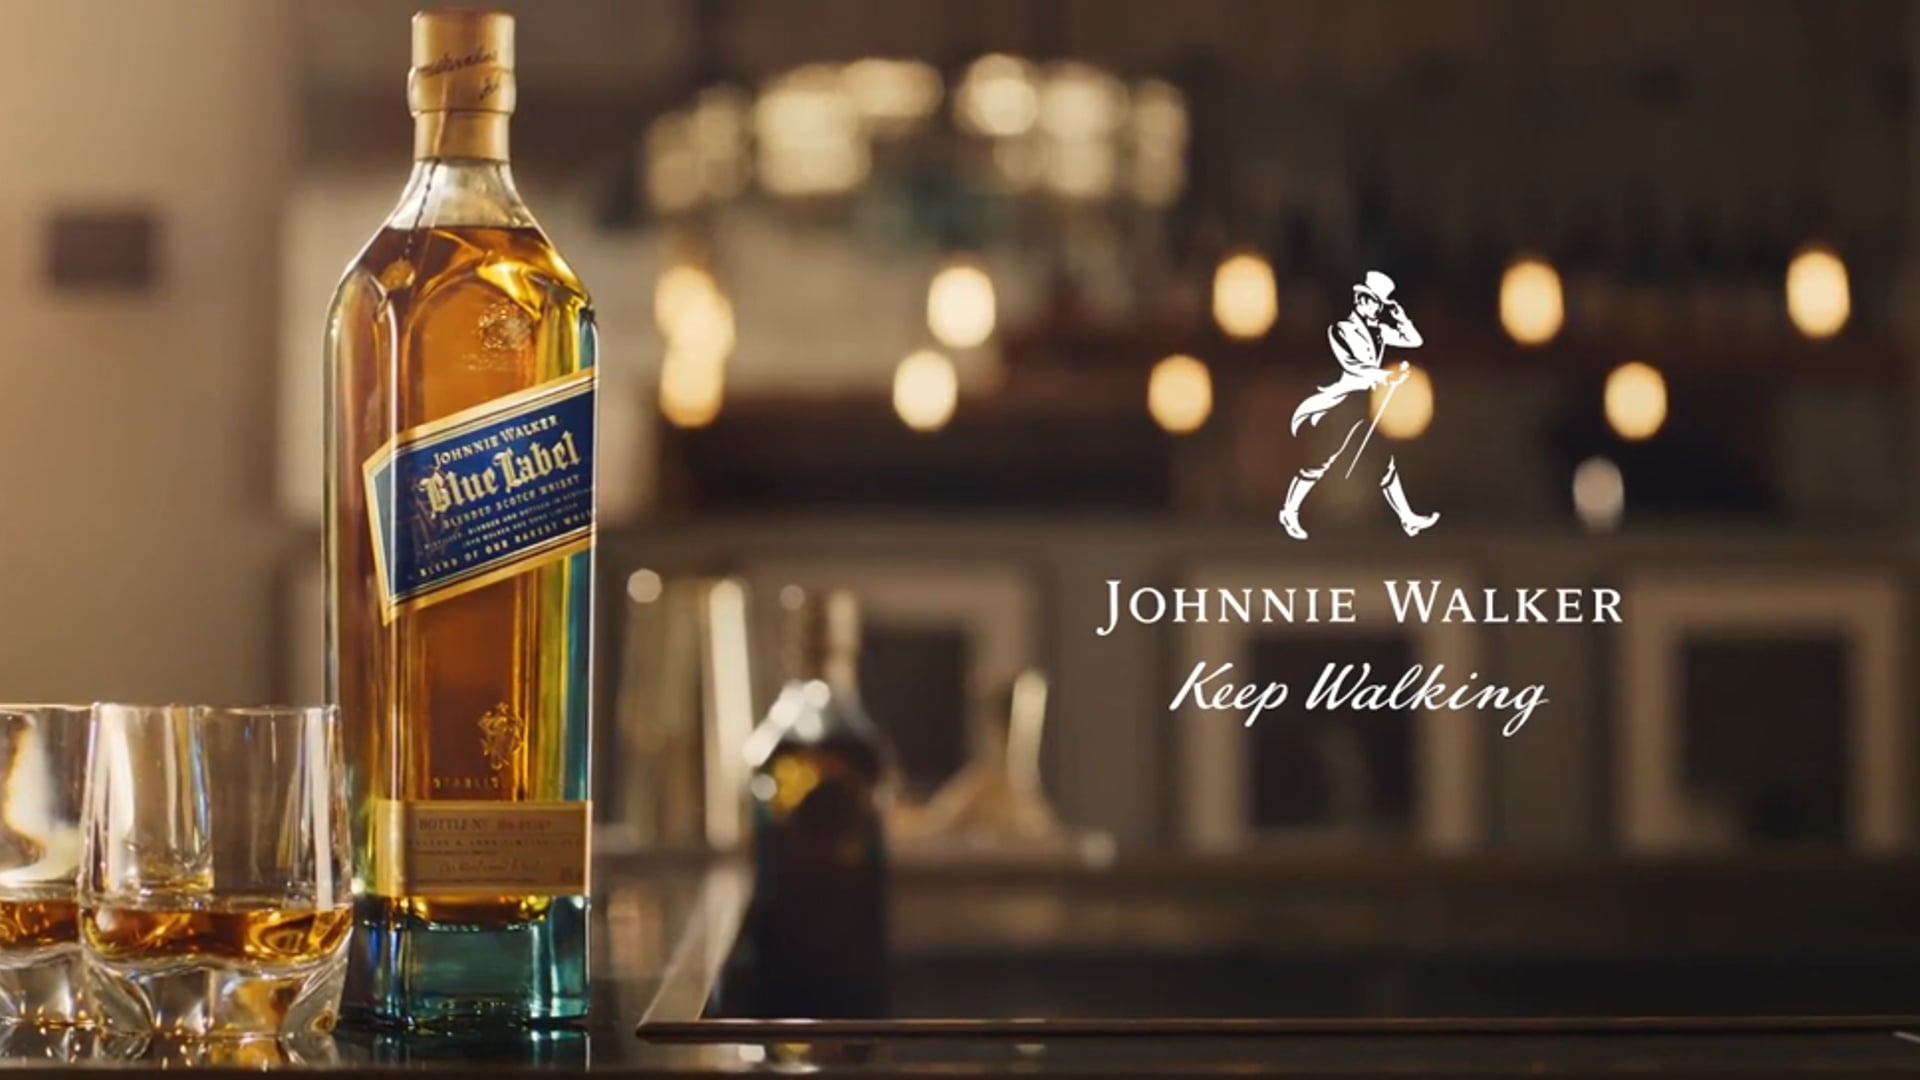 Johnnie Walker Blue Label - It's what's inside Advert 2018